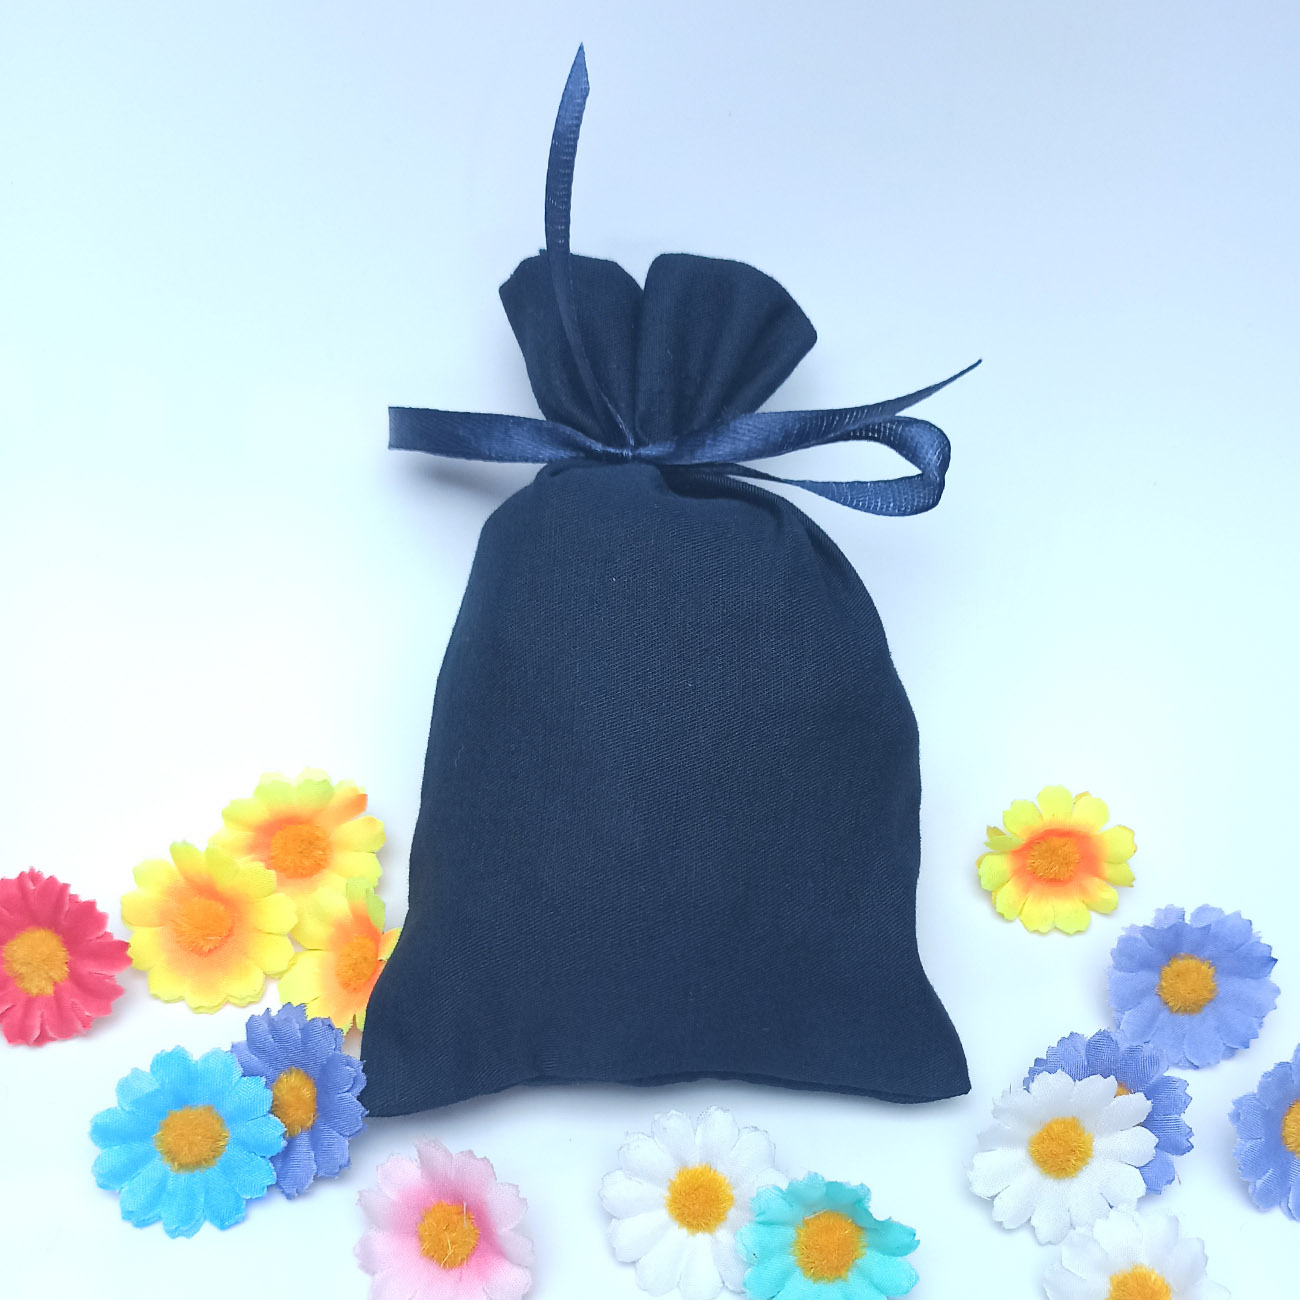 Мешочек 10х15 см темно-синего цвета для упаковки подарка, сувениров, товаров ручной работы 